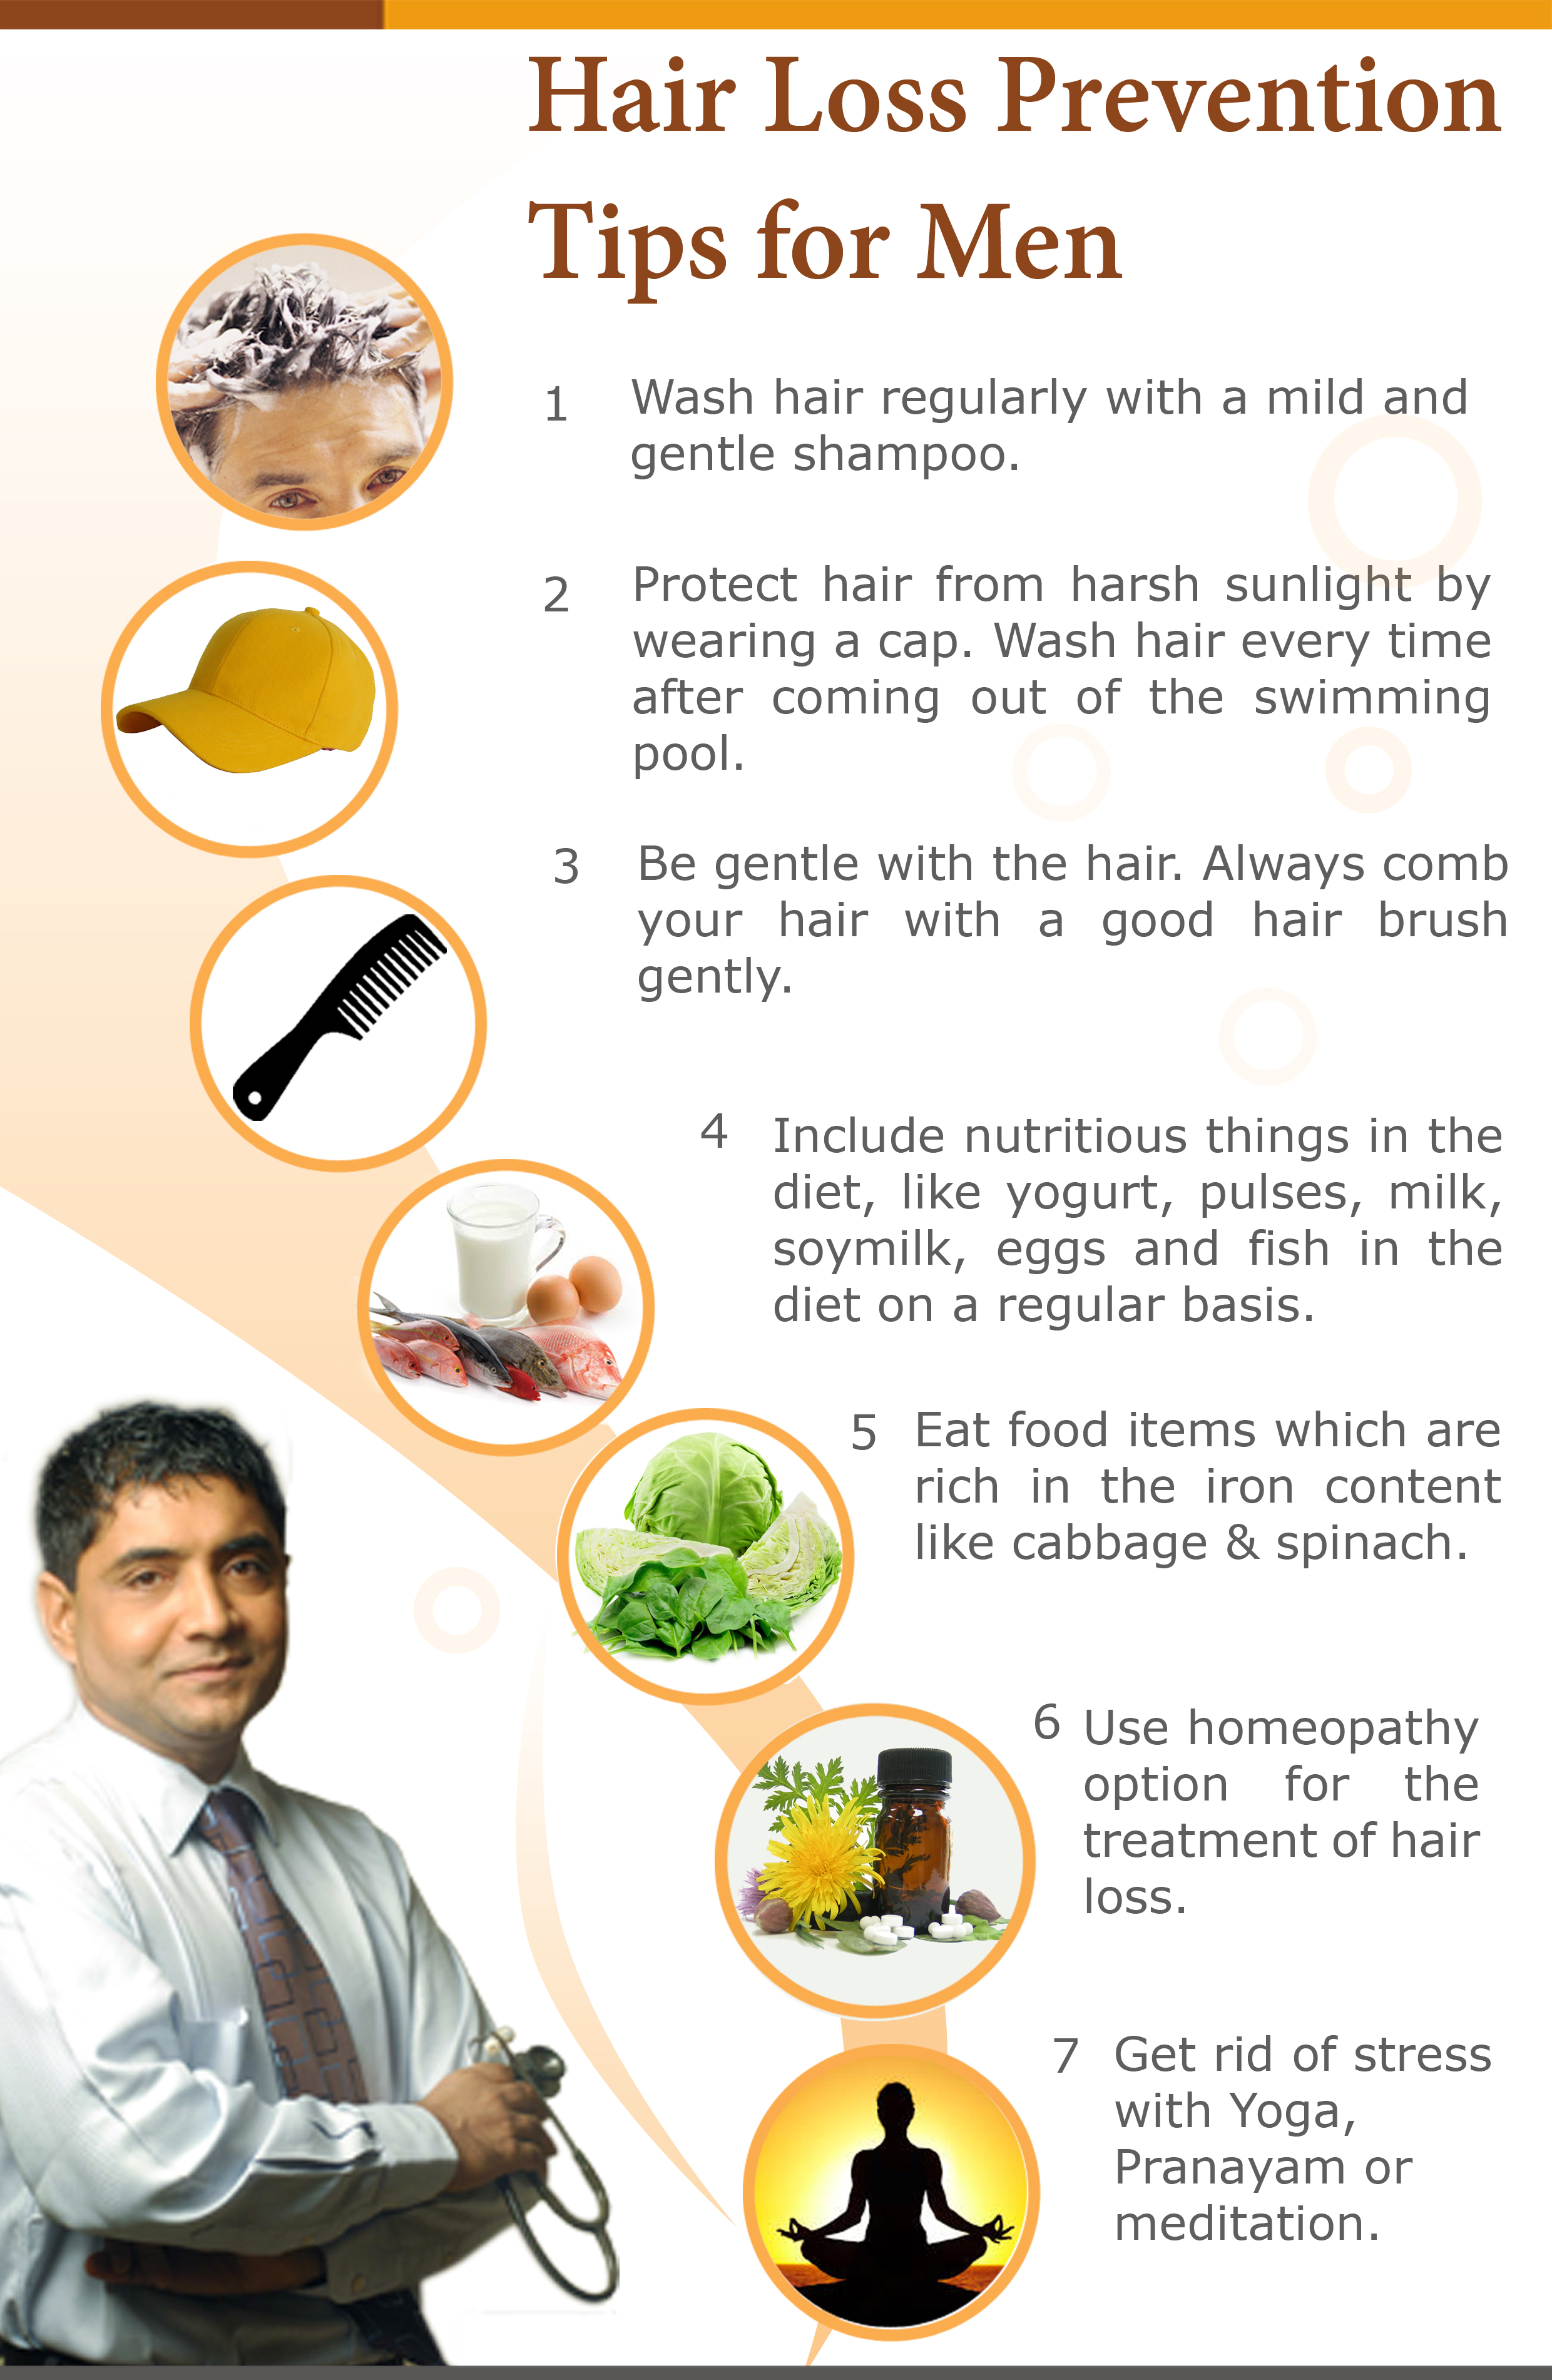 Hair Loss Prevention Tips for Men